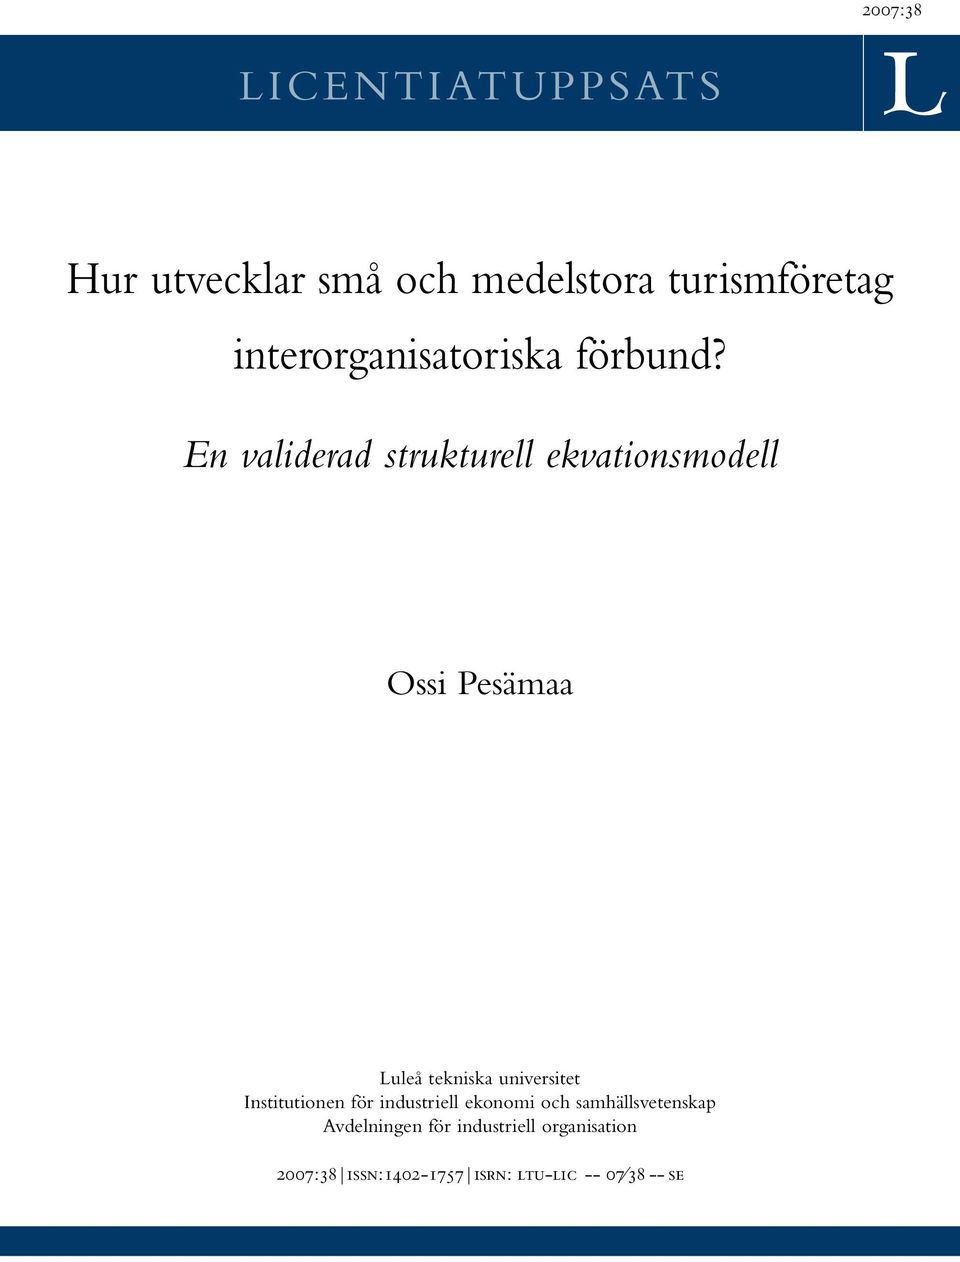 En validerad strukturell ekvationsmodell Ossi Pesämaa Luleå tekniska universitet